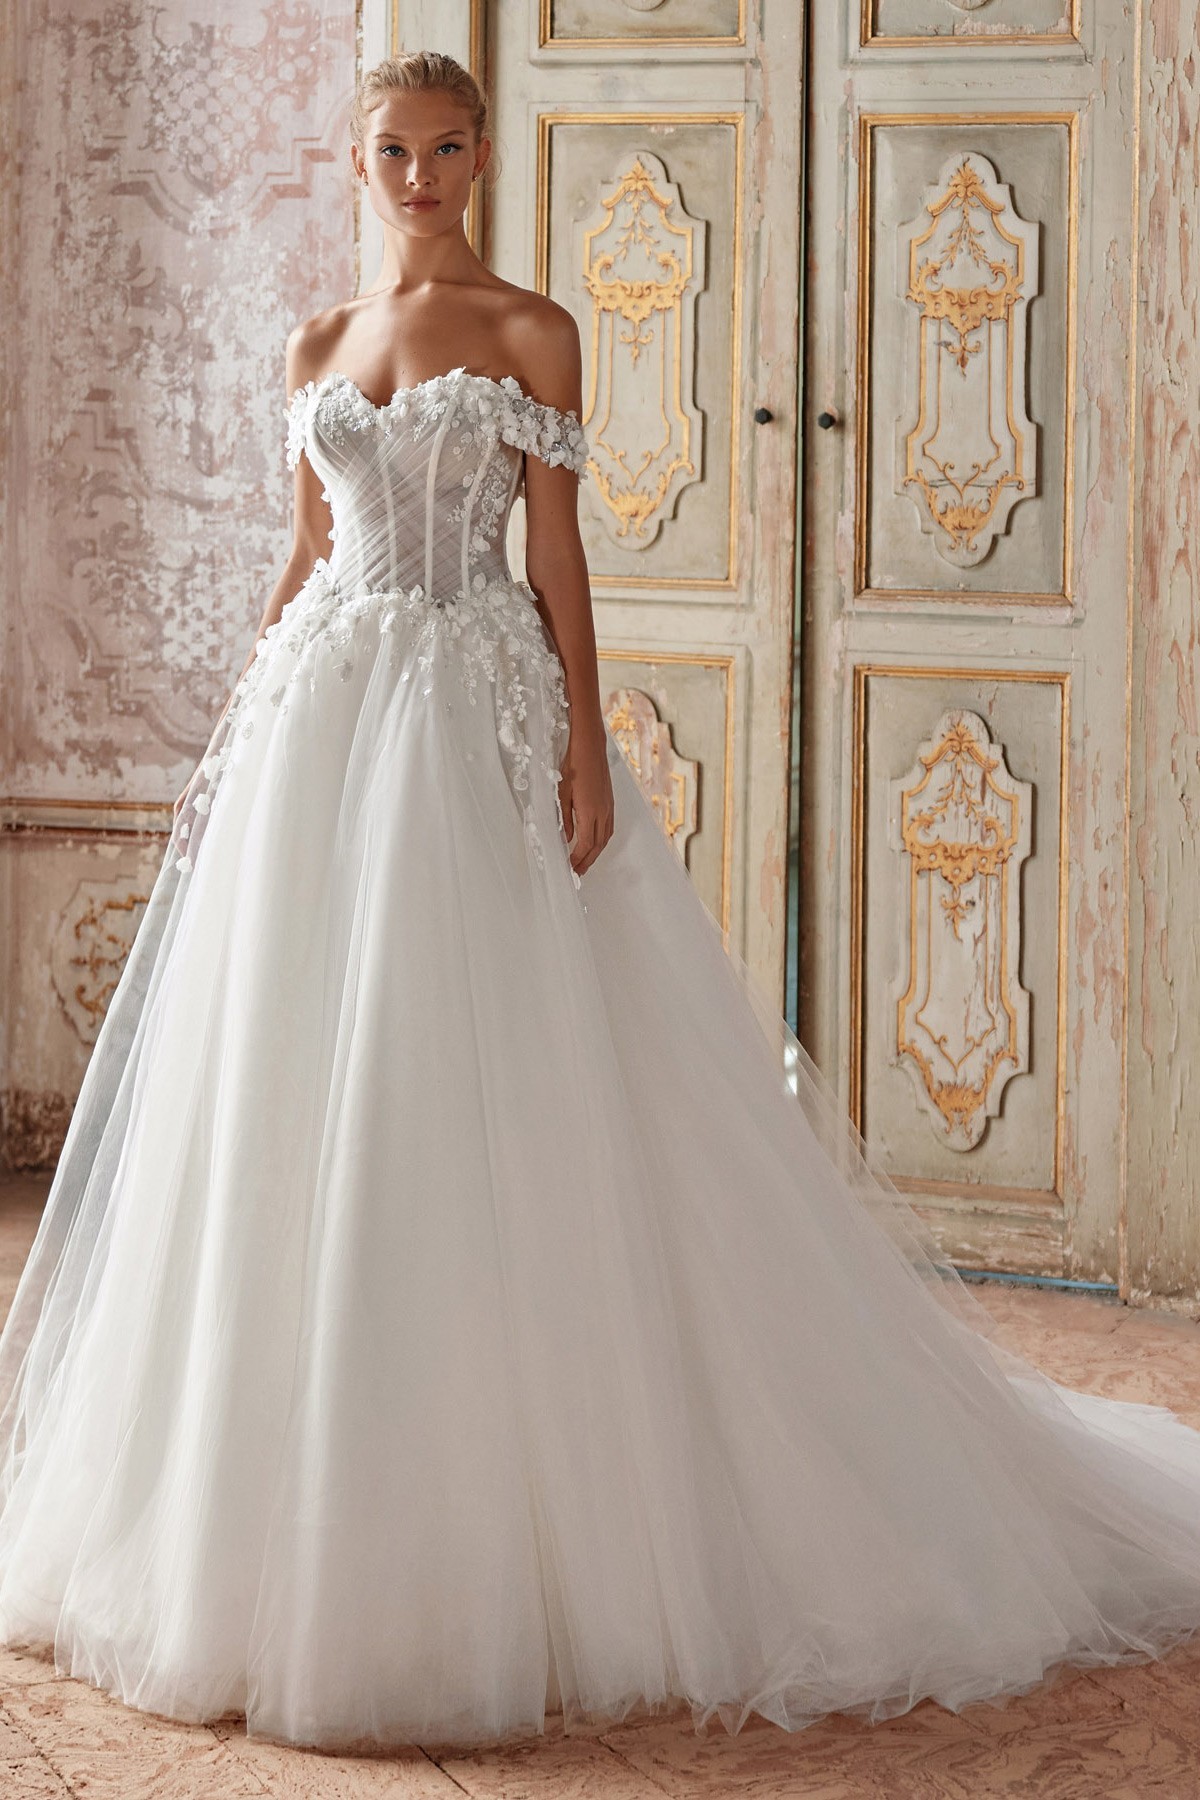 Rozprávkové svadobné šaty s veľkou sukňou.